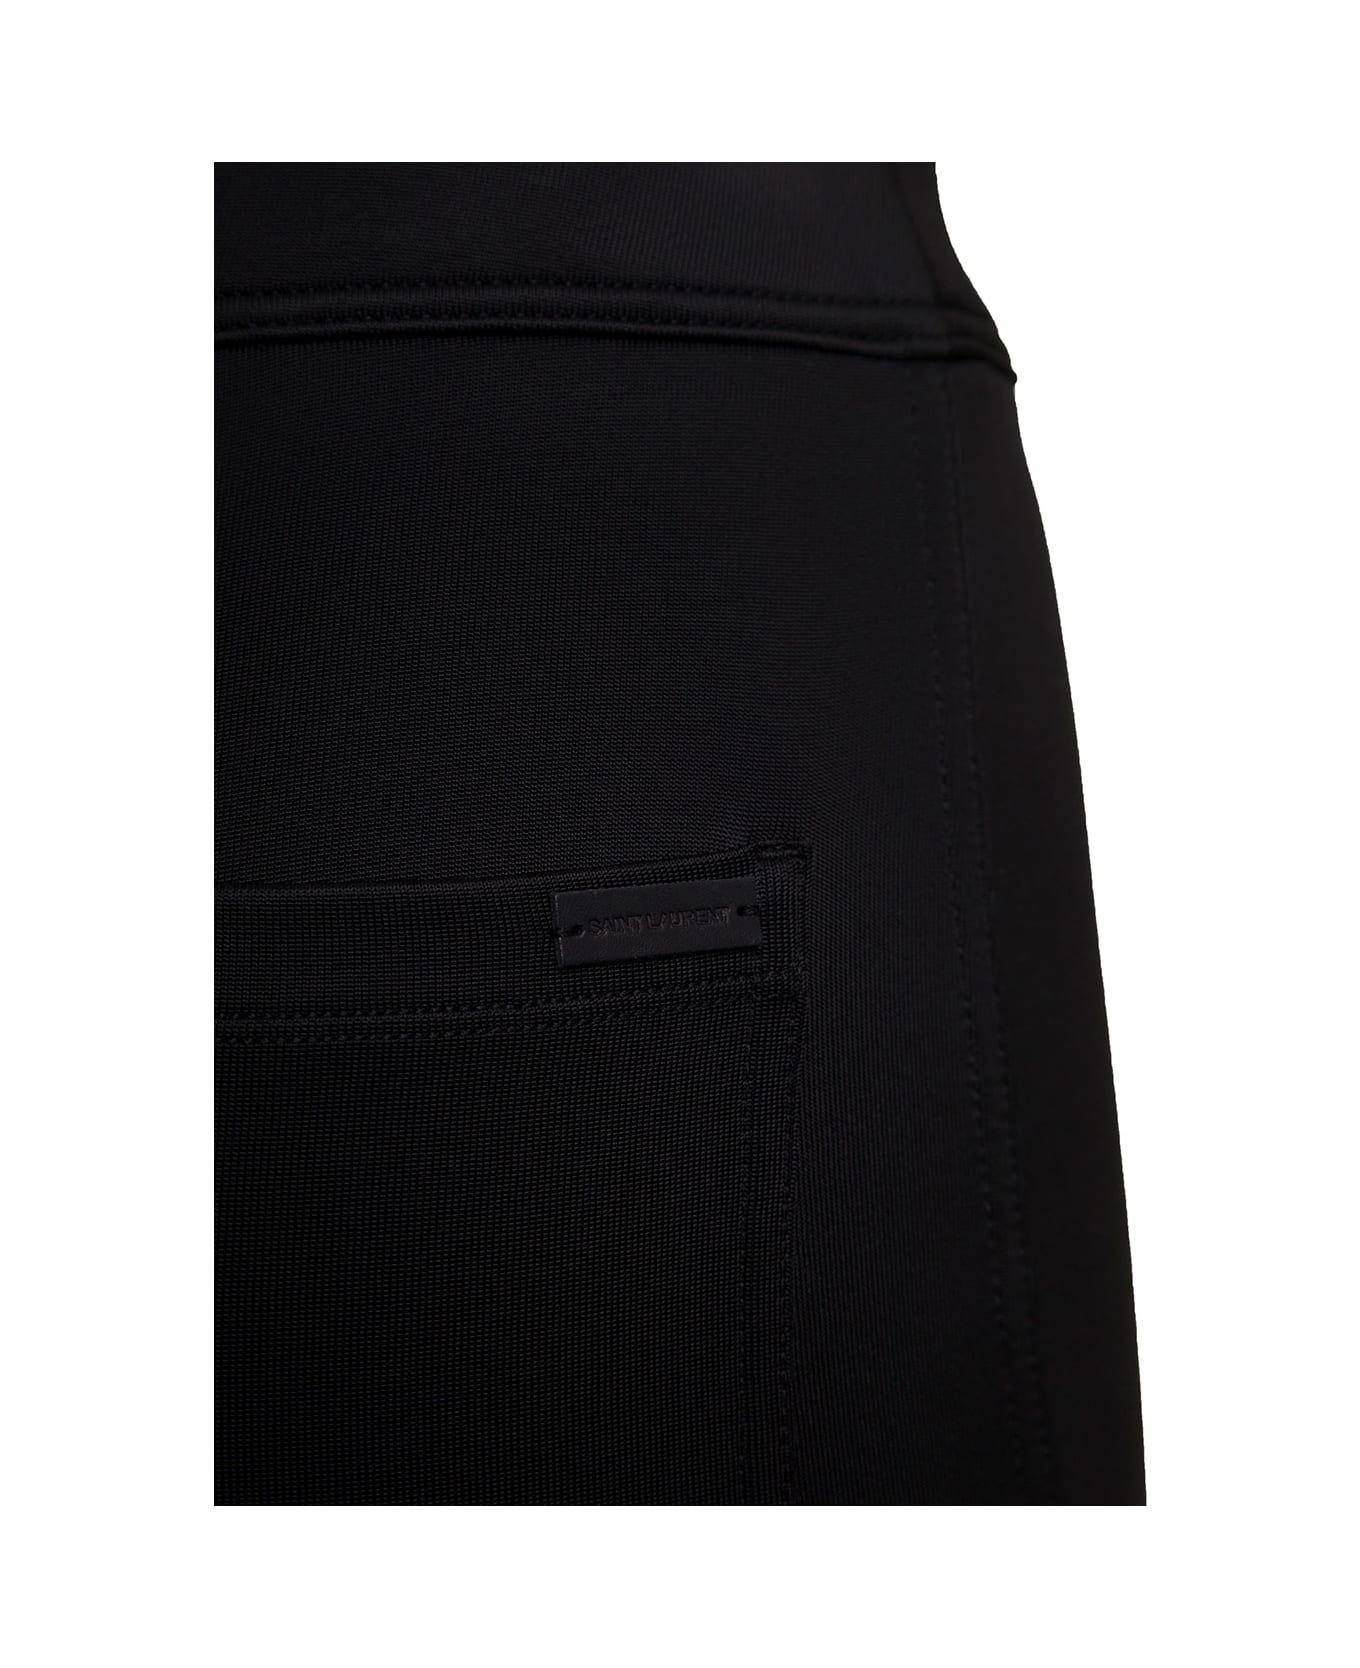 Saint Laurent Woman's Black Slim Fit Jersey Pants - Black